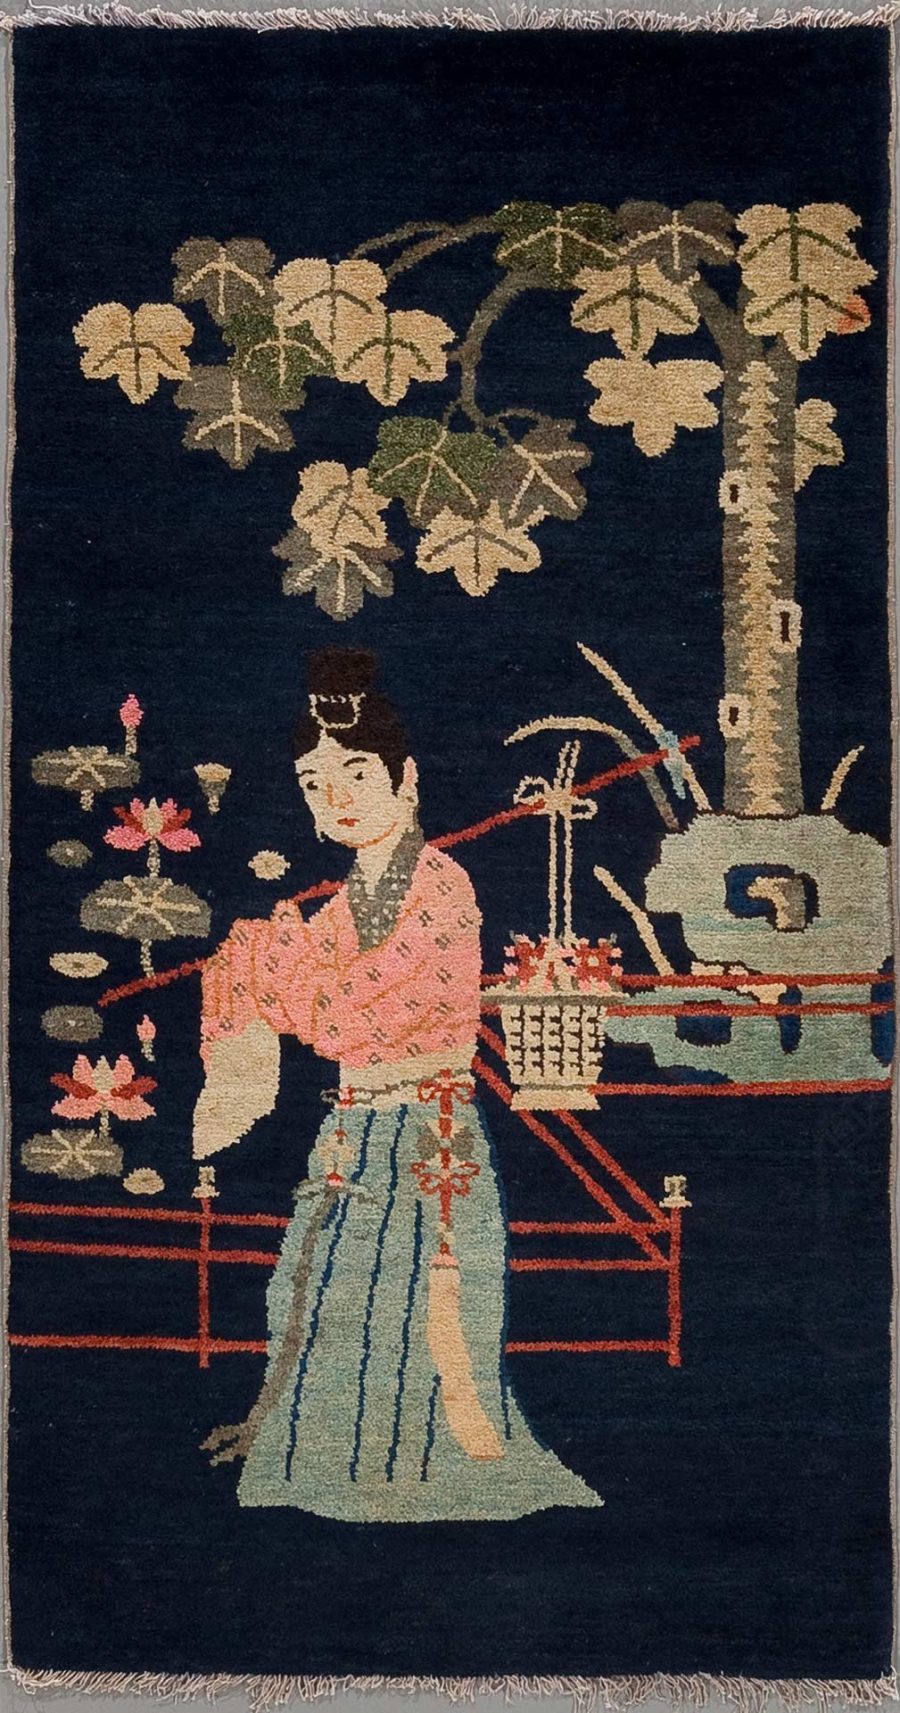 Handgearbeiteter Teppich mit einer Darstellung einer traditionell gekleideten japanischen Frau neben einem Baum und einer Brücke über einem Fluss.